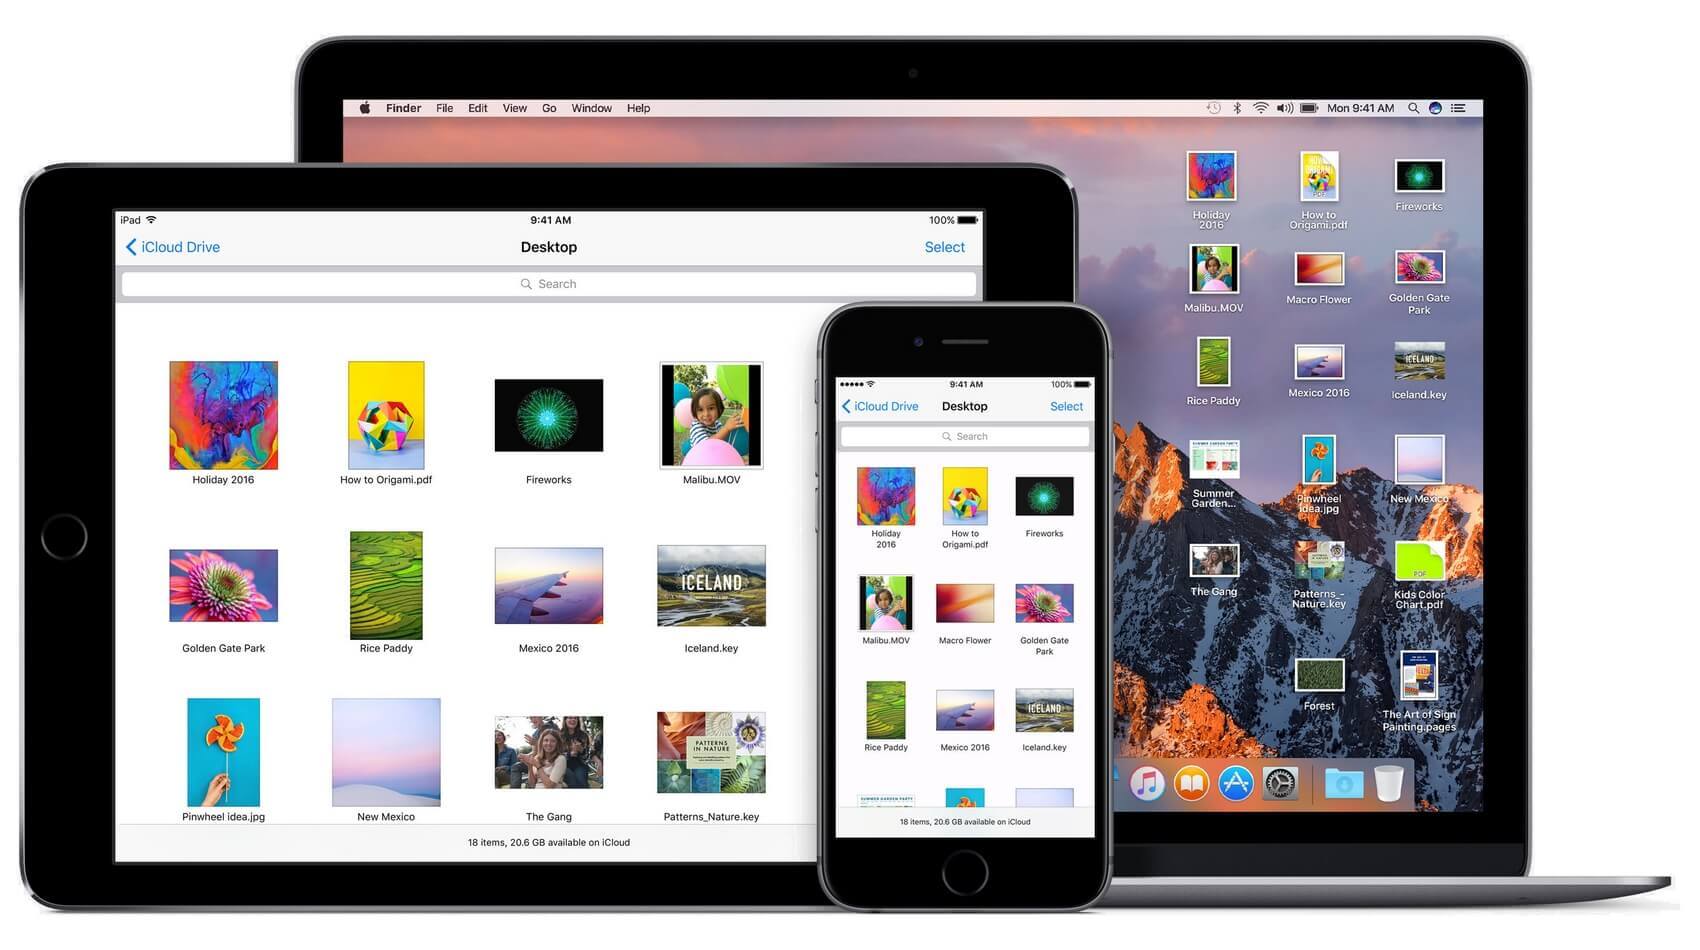 Apple выпустила первые бета-версии iOS 10.1 и macOS Sierra 10.12.1